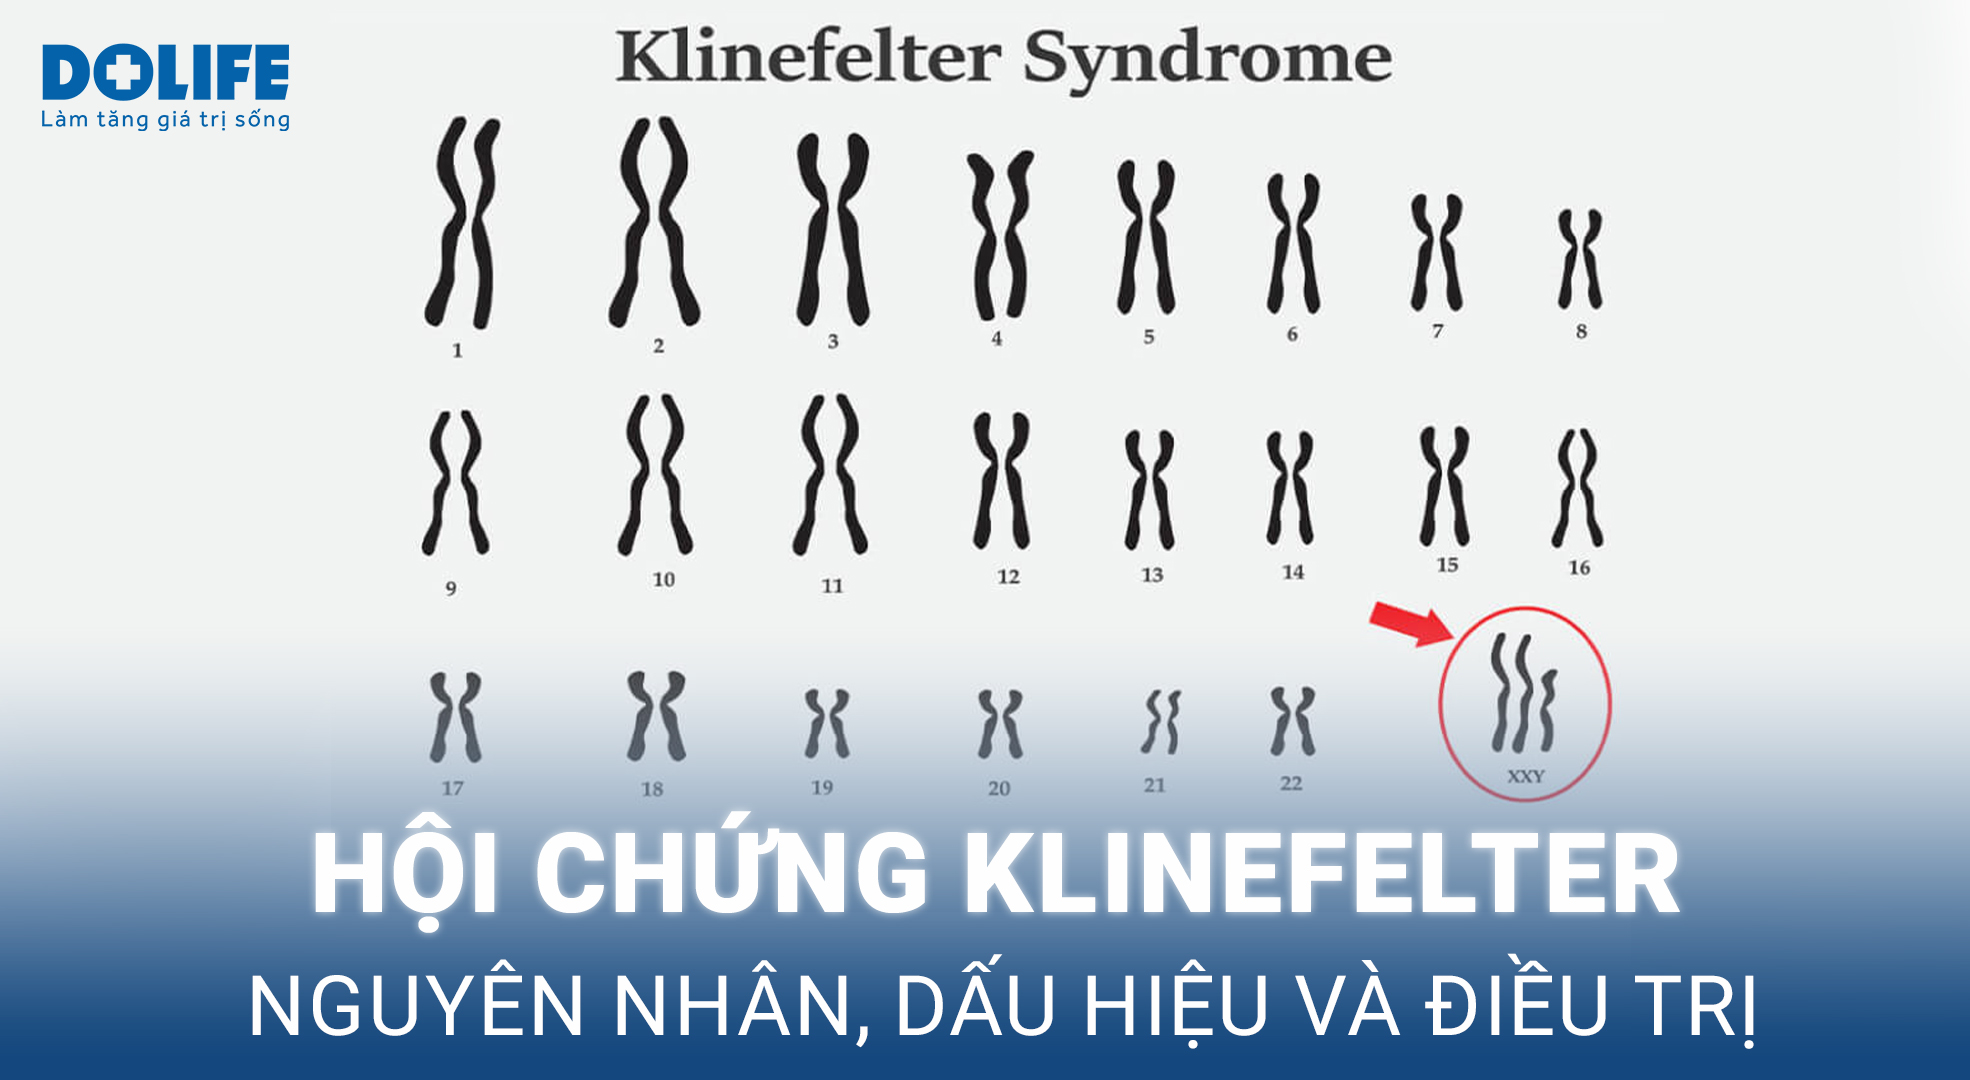 Hội chứng Klinefelter gây thiểu năng sinh dục và vô sinh ở nam giới